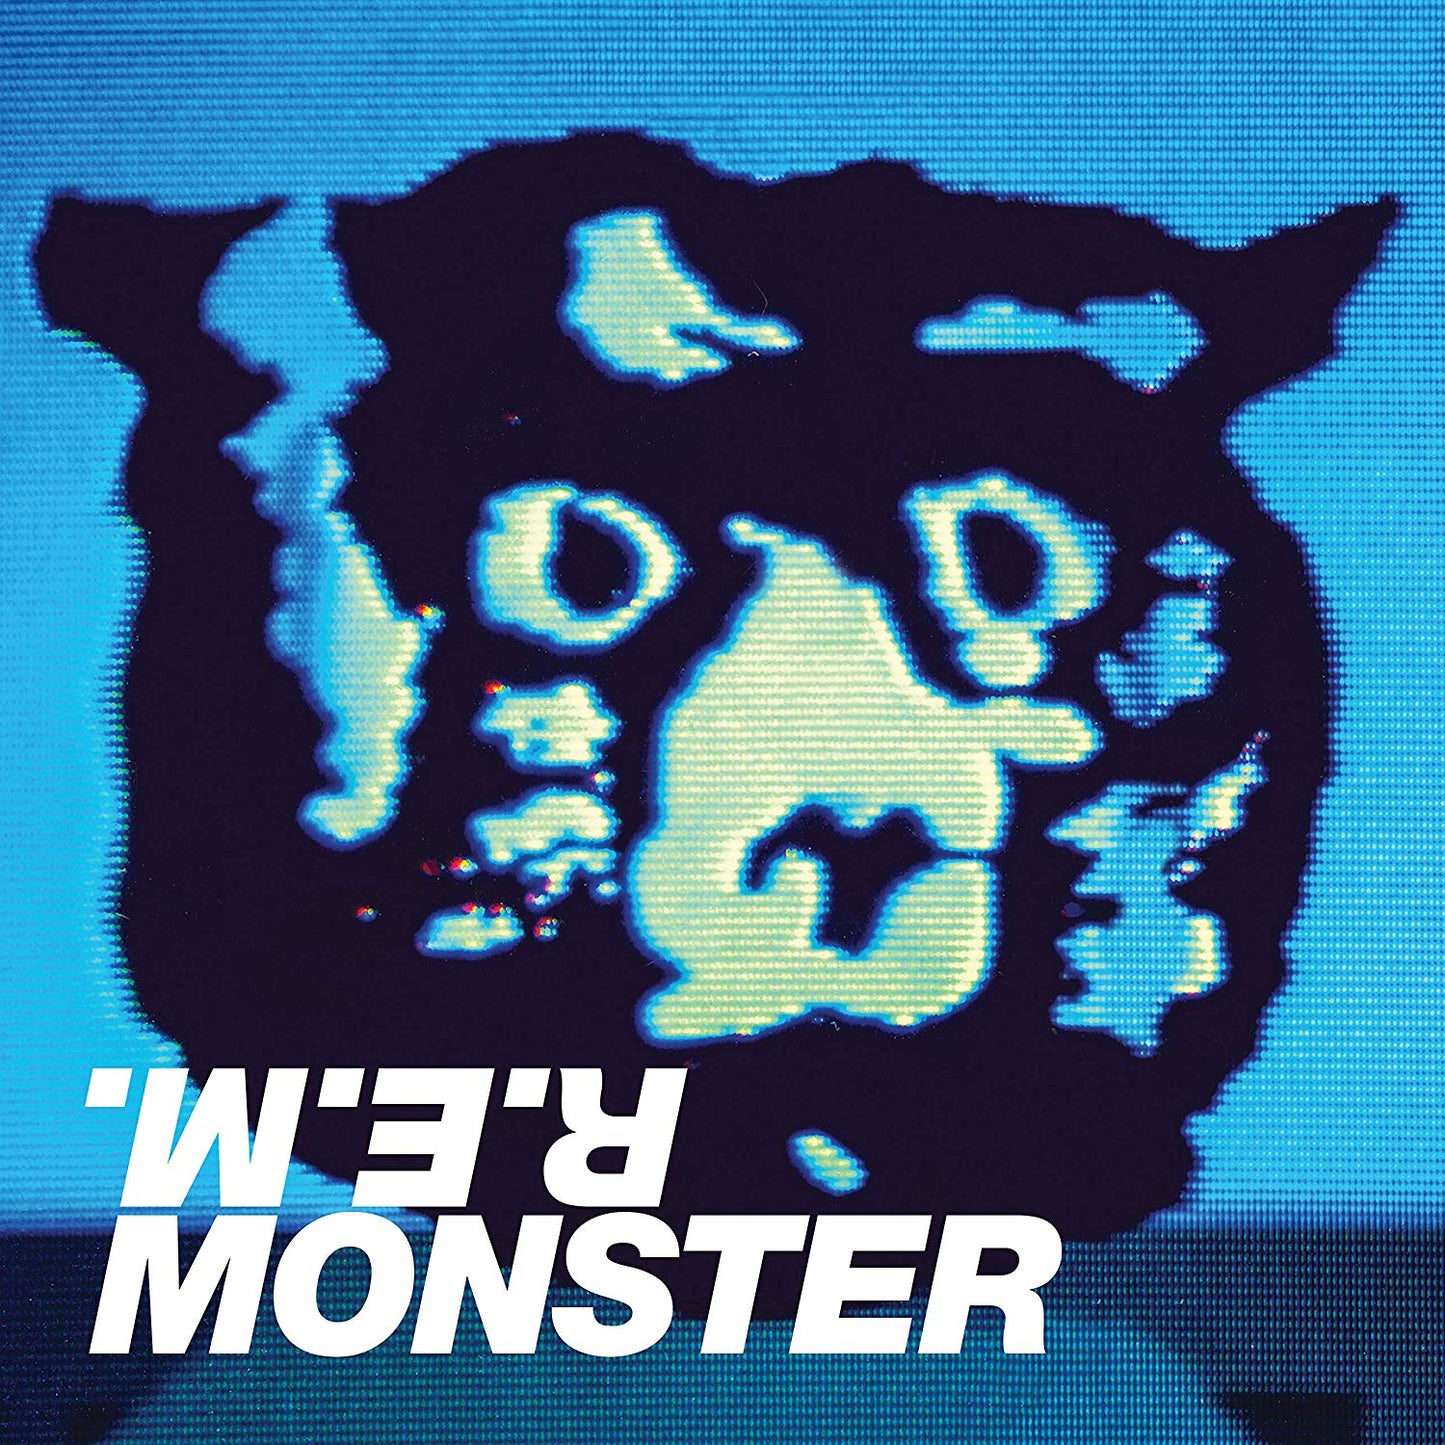 R.E.M. - Monster - 2LP